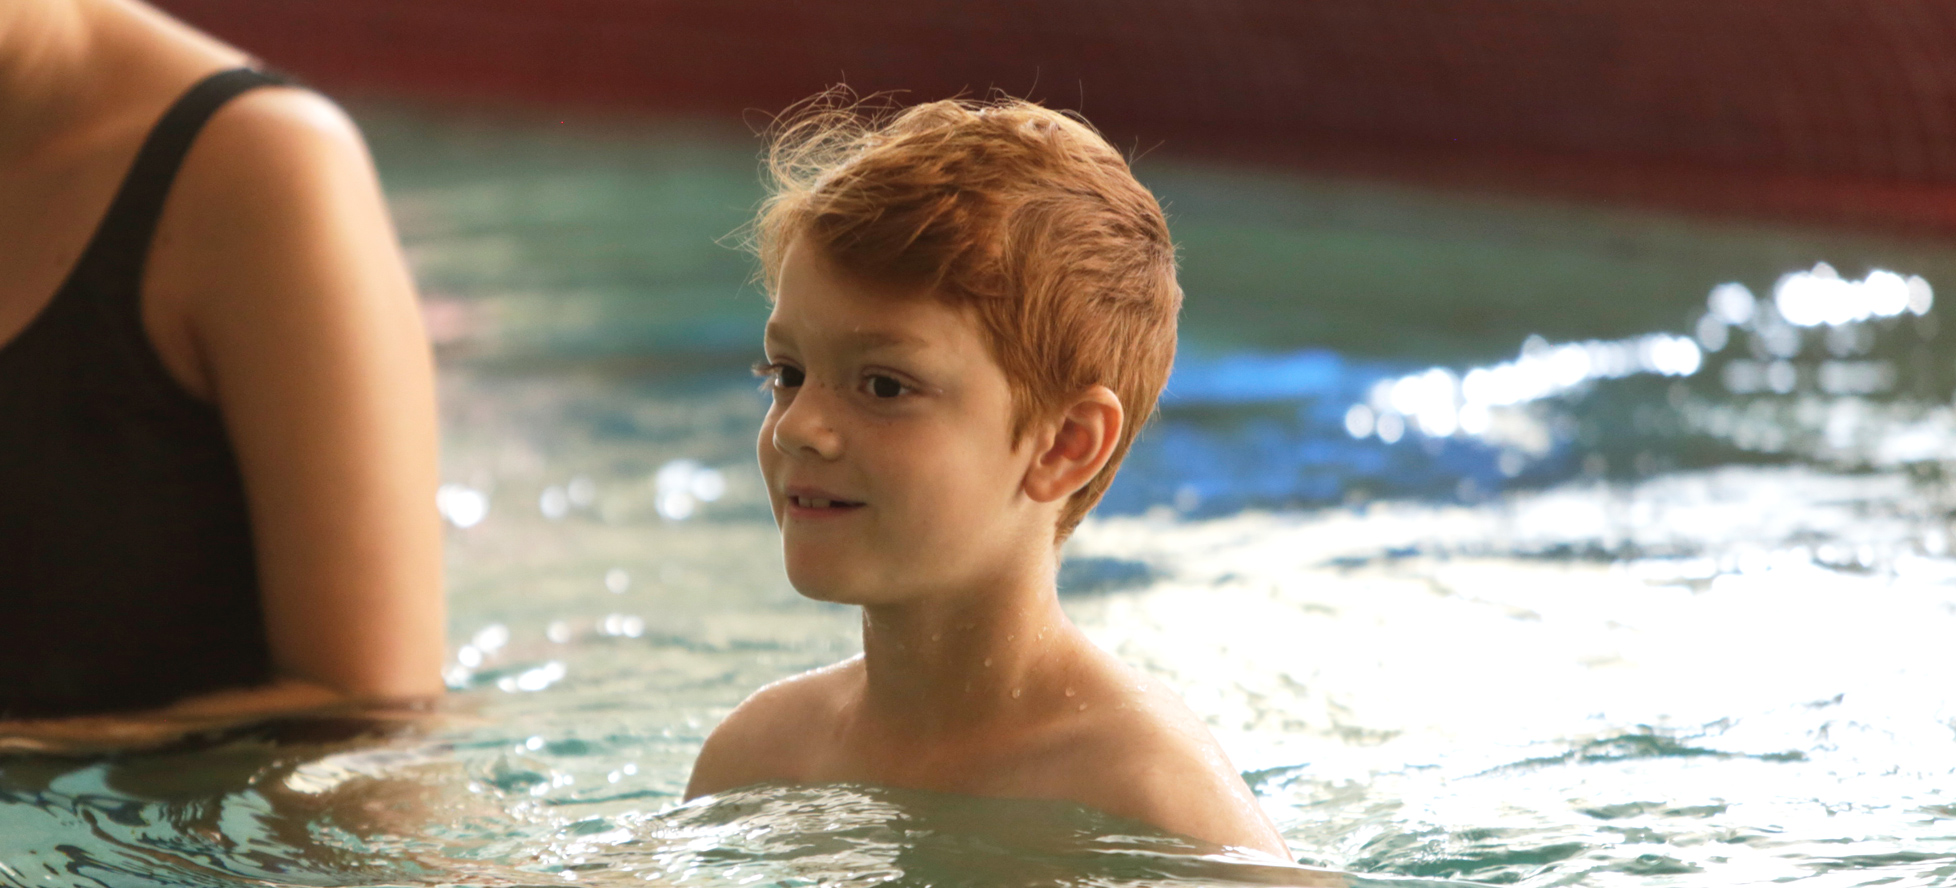 Redhead boy in swimming pool